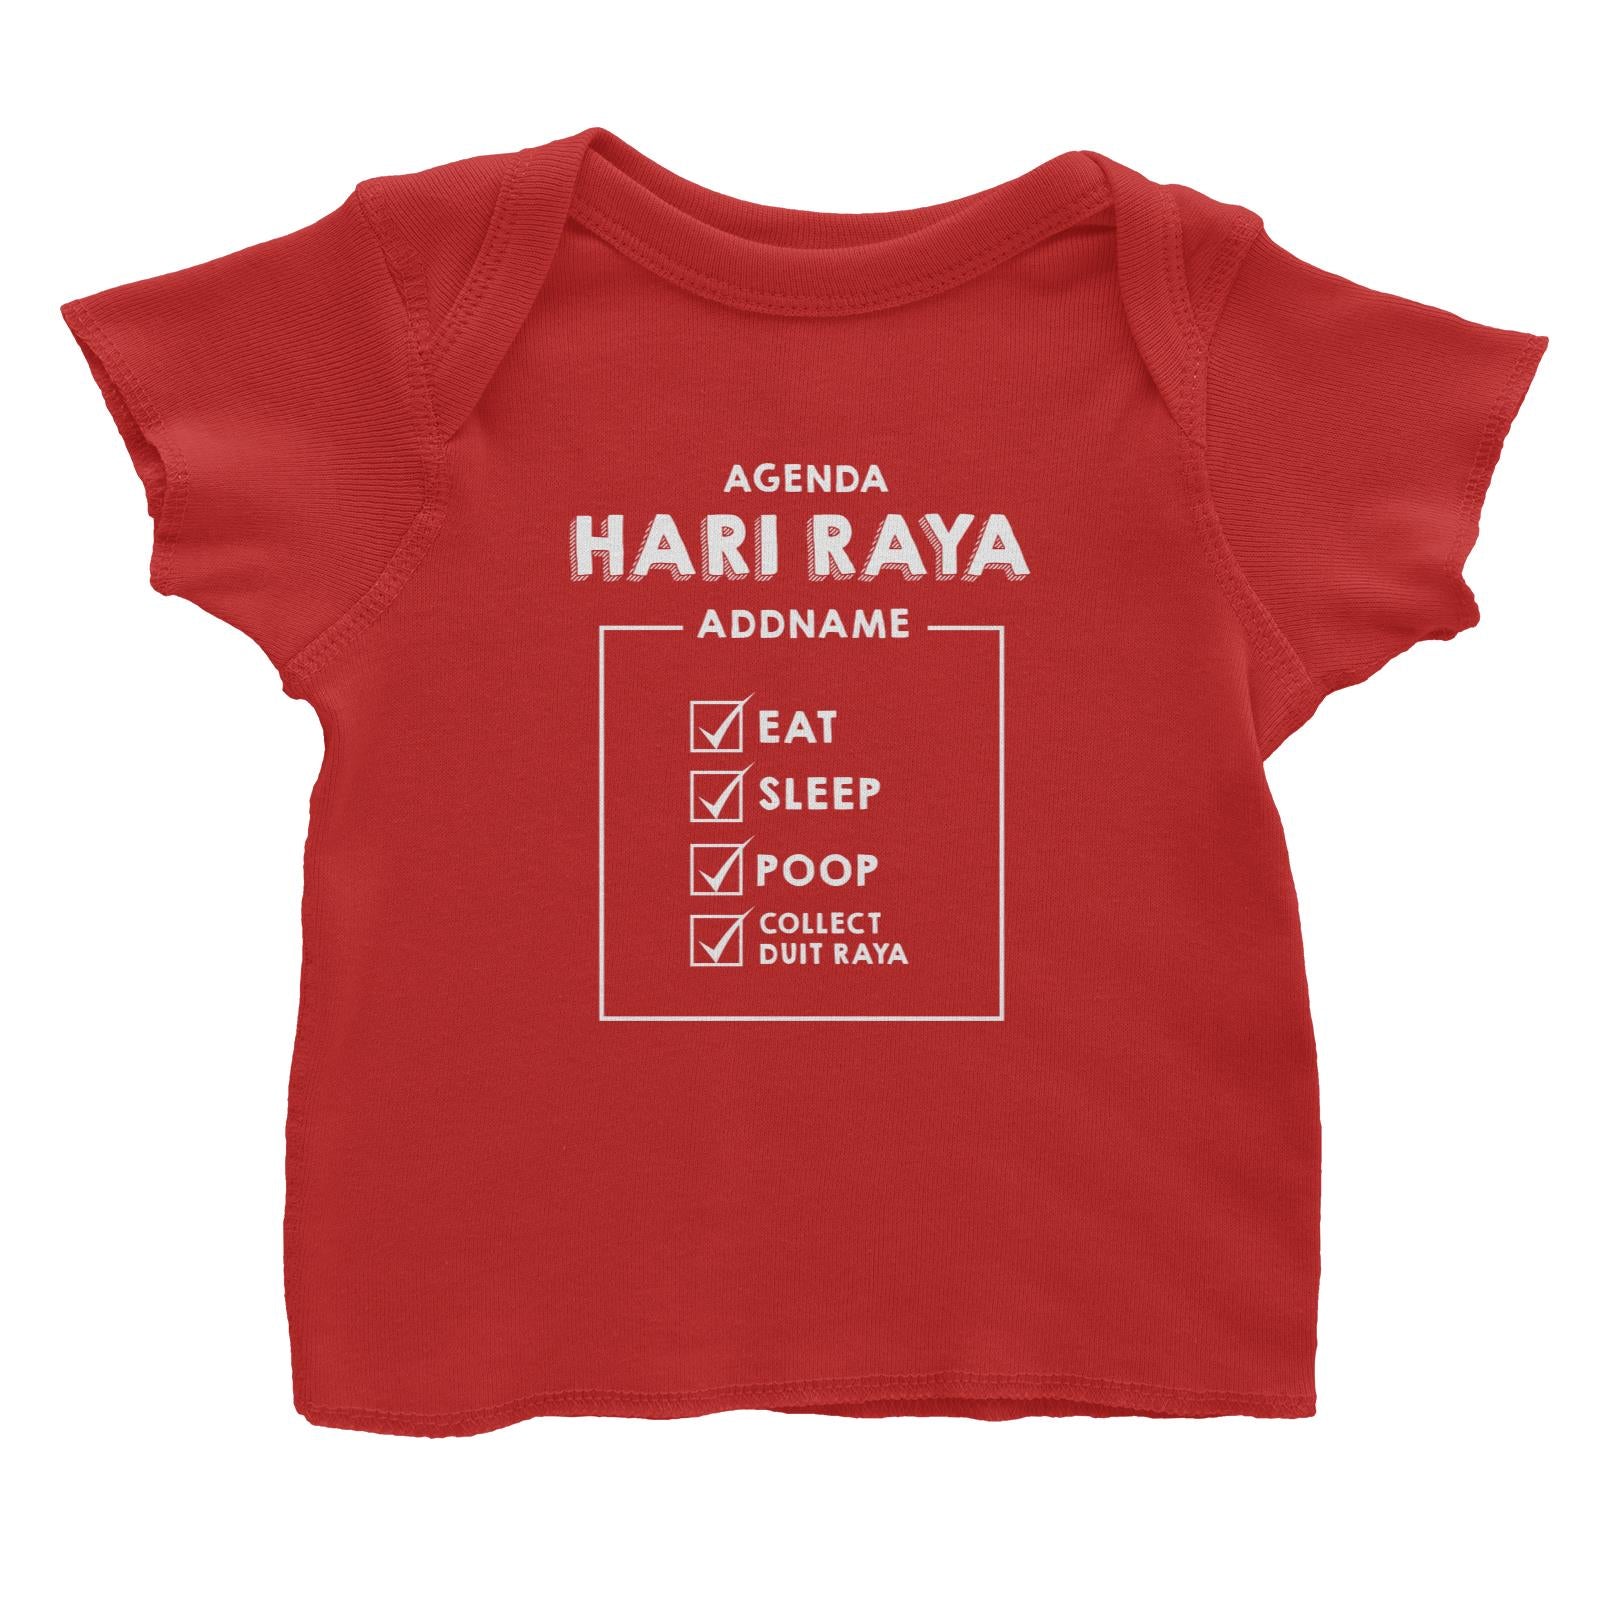 Babys Agenda Hari Raya Baby T-Shirt  Personalizable Designs Raya Agenda